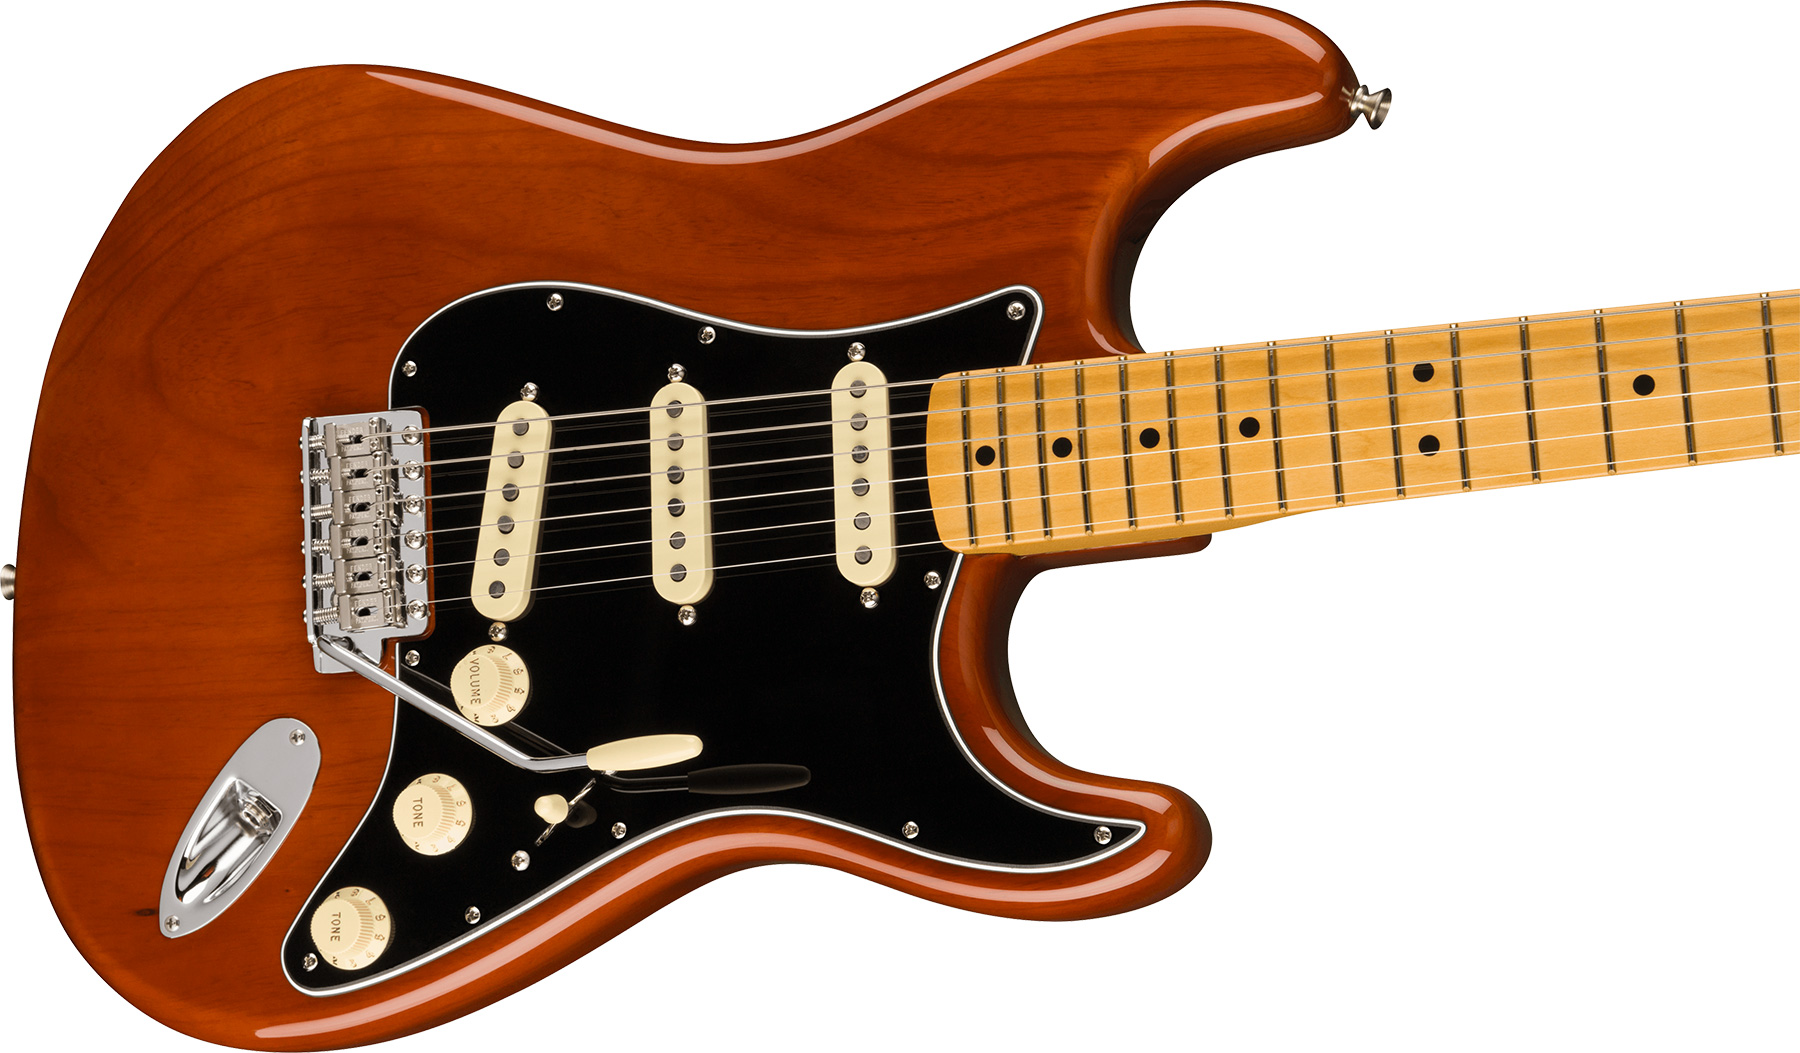 Fender Strat 1973 American Vintage Ii Usa 3s Trem Mn - Mocha - Str shape electric guitar - Variation 2